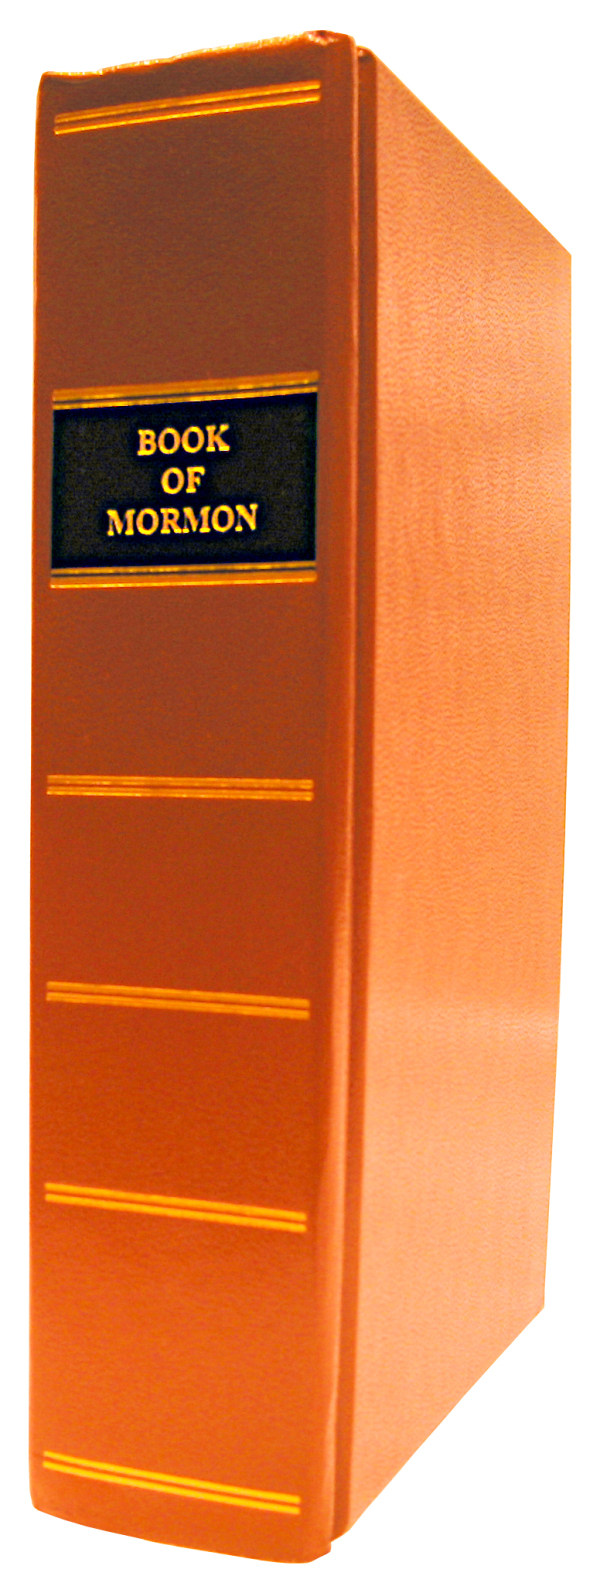 Mormons bok